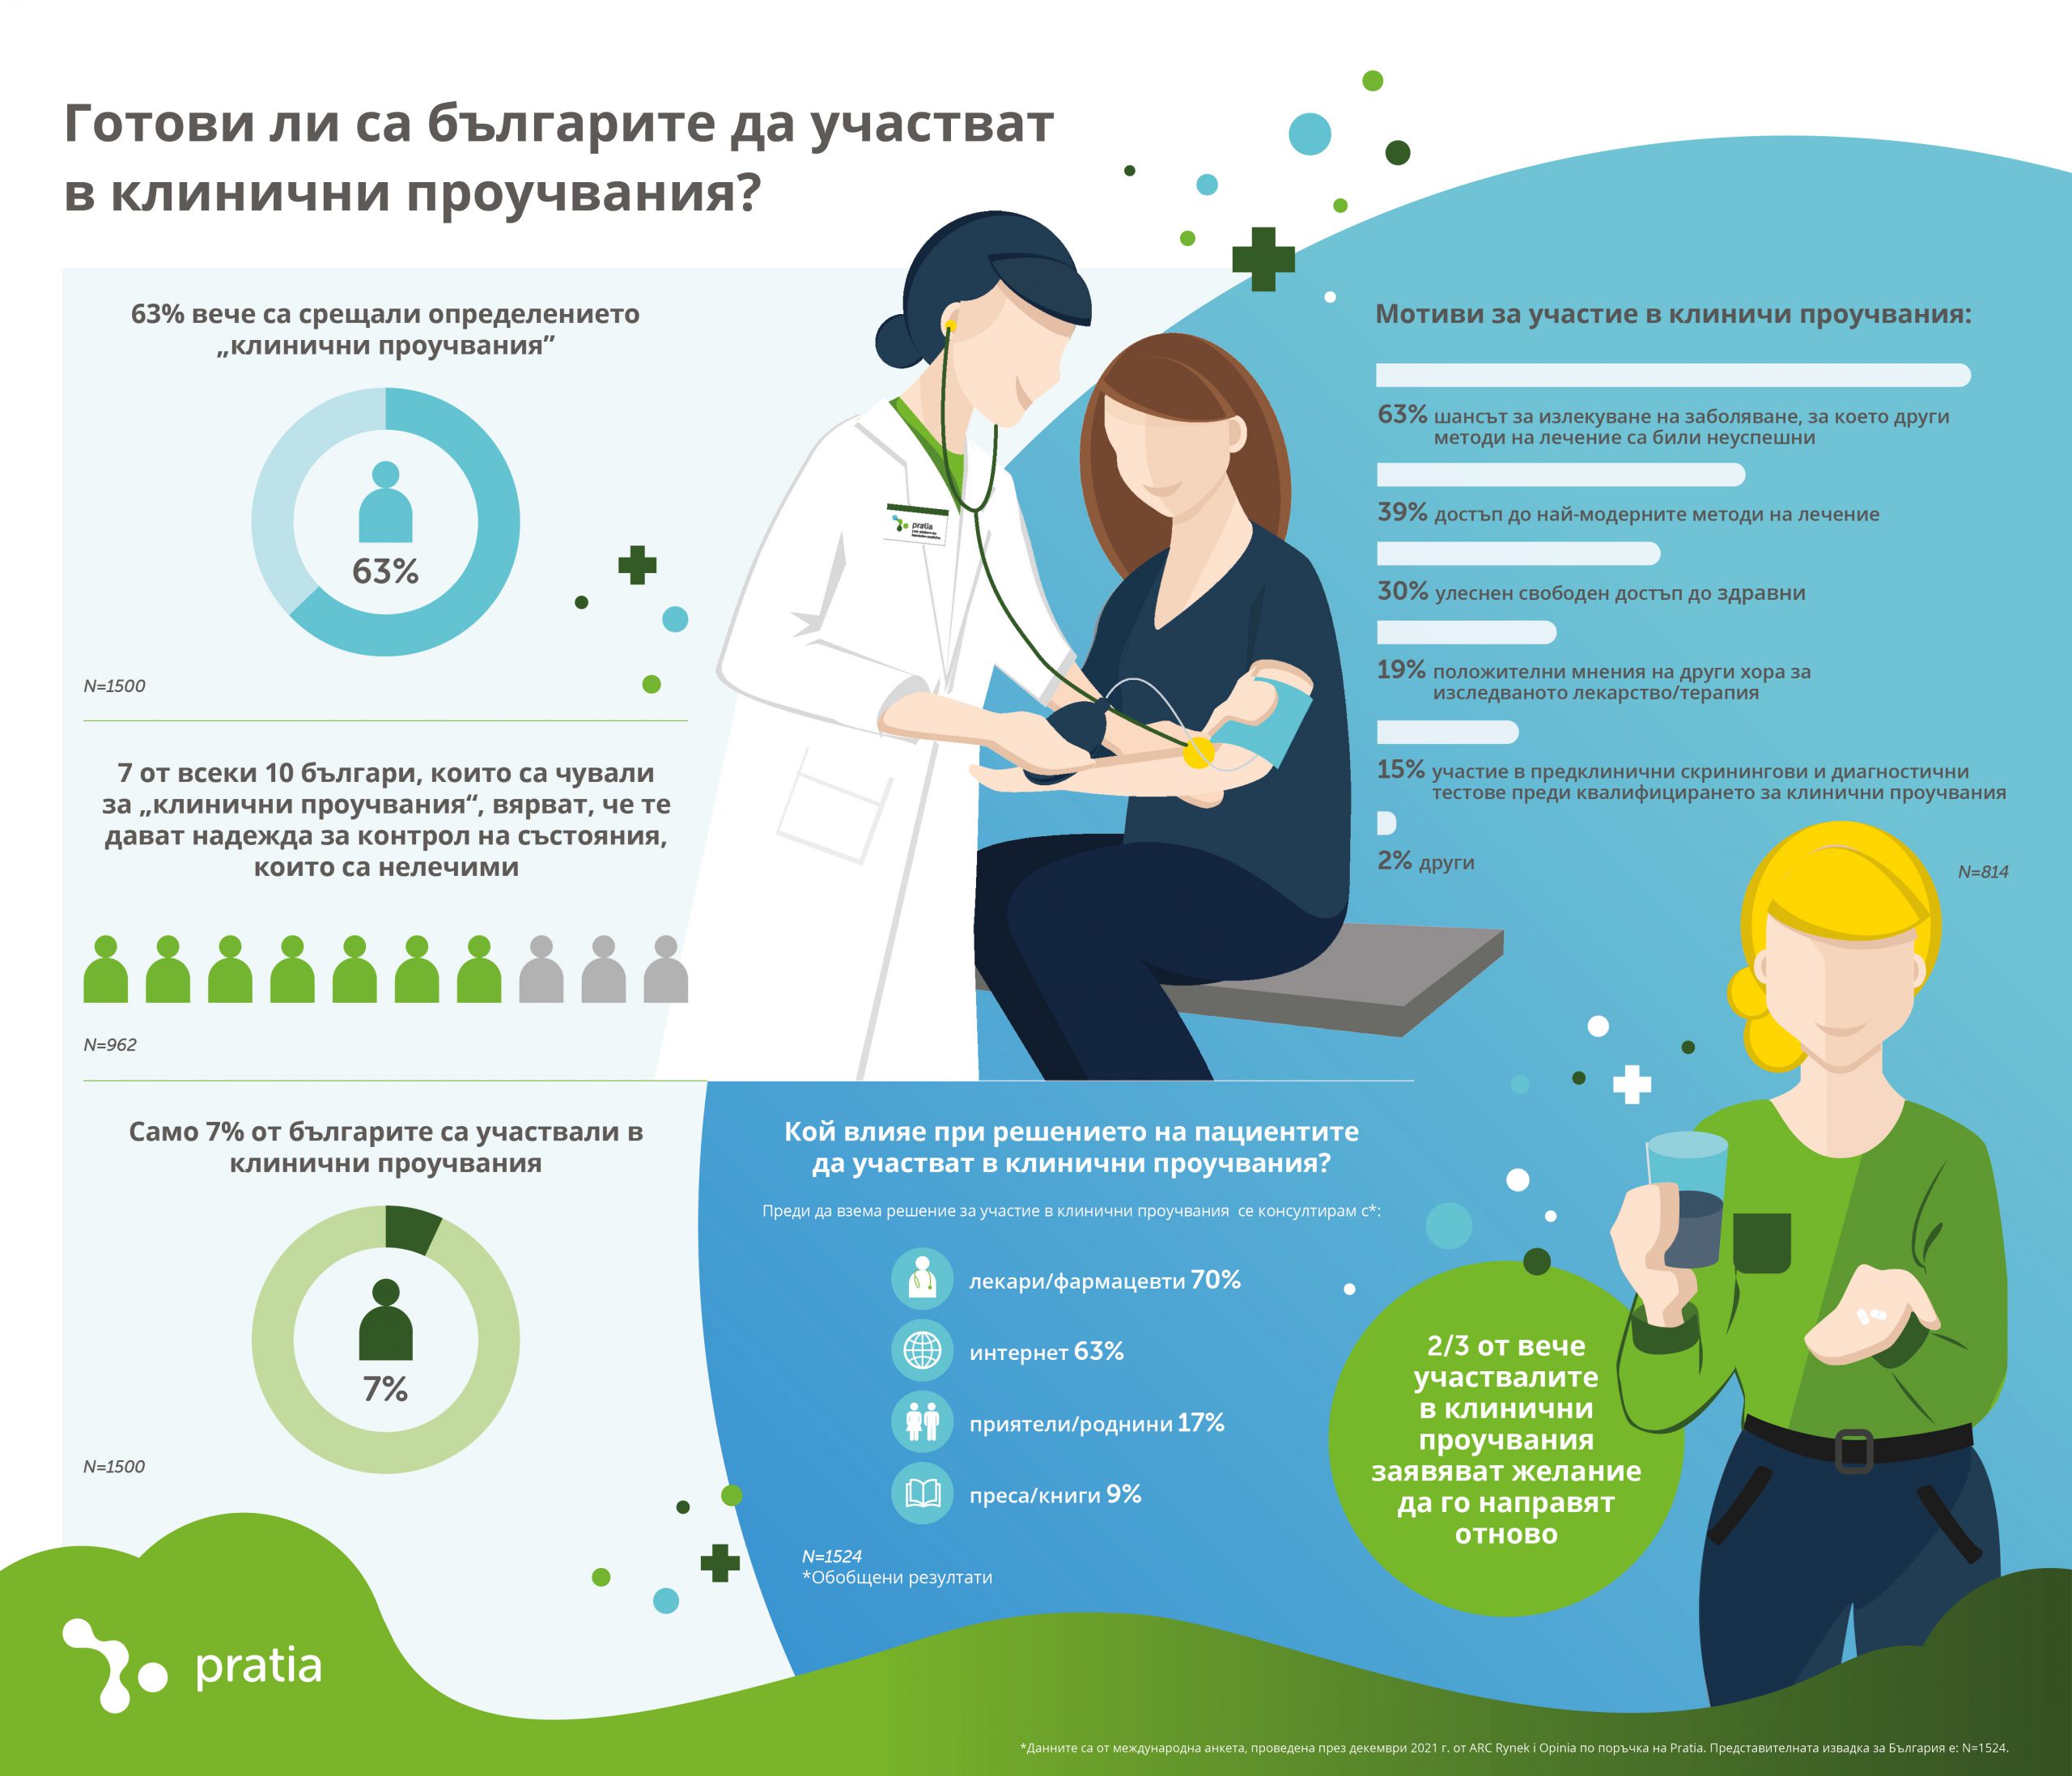 Склонни ли са българите да участват в клинични проучвания